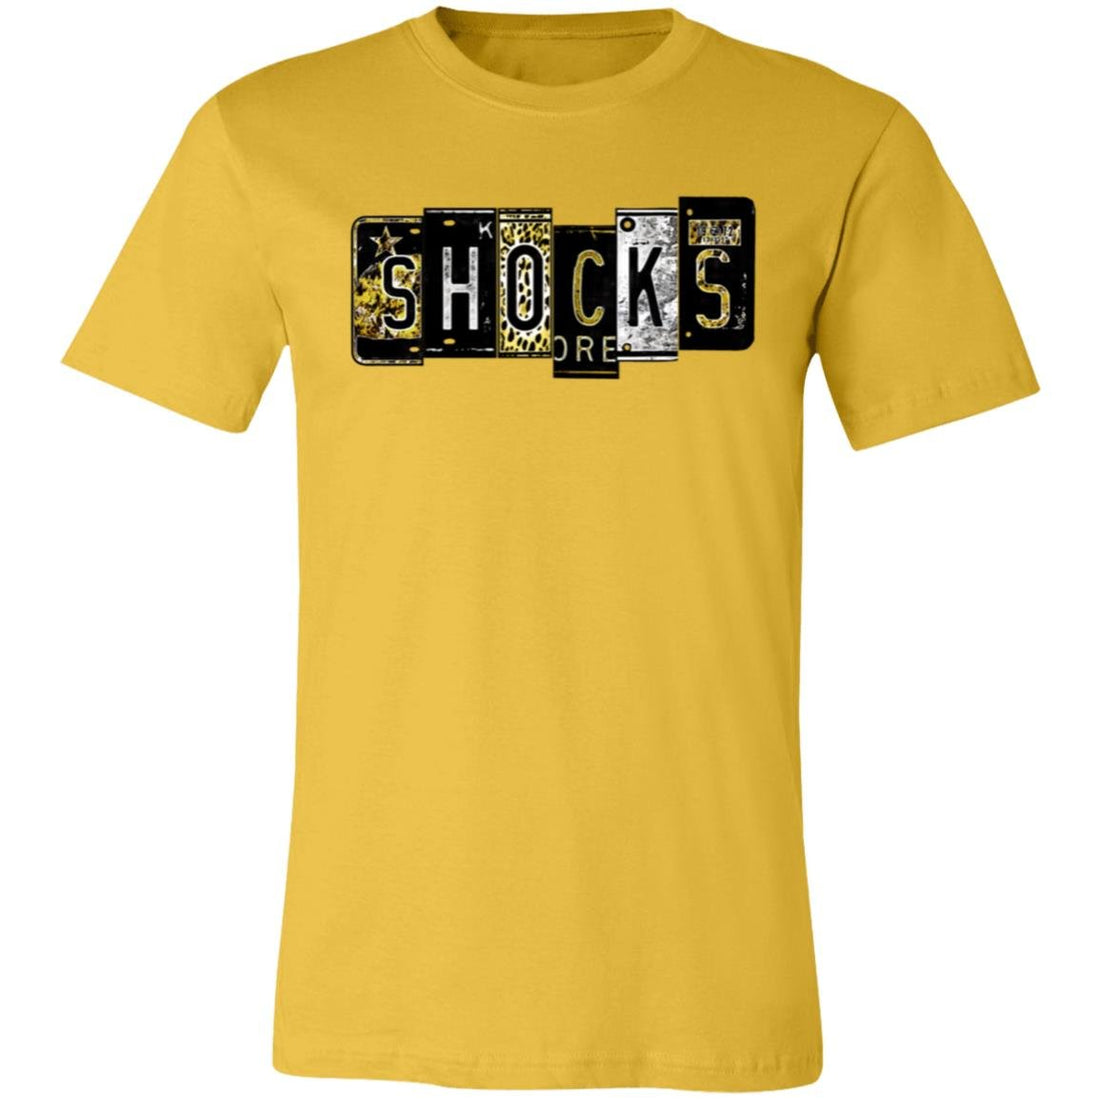 Shocks Plates Short-Sleeve T-Shirt - T-Shirts - Positively Sassy - Shocks Plates Short-Sleeve T-Shirt